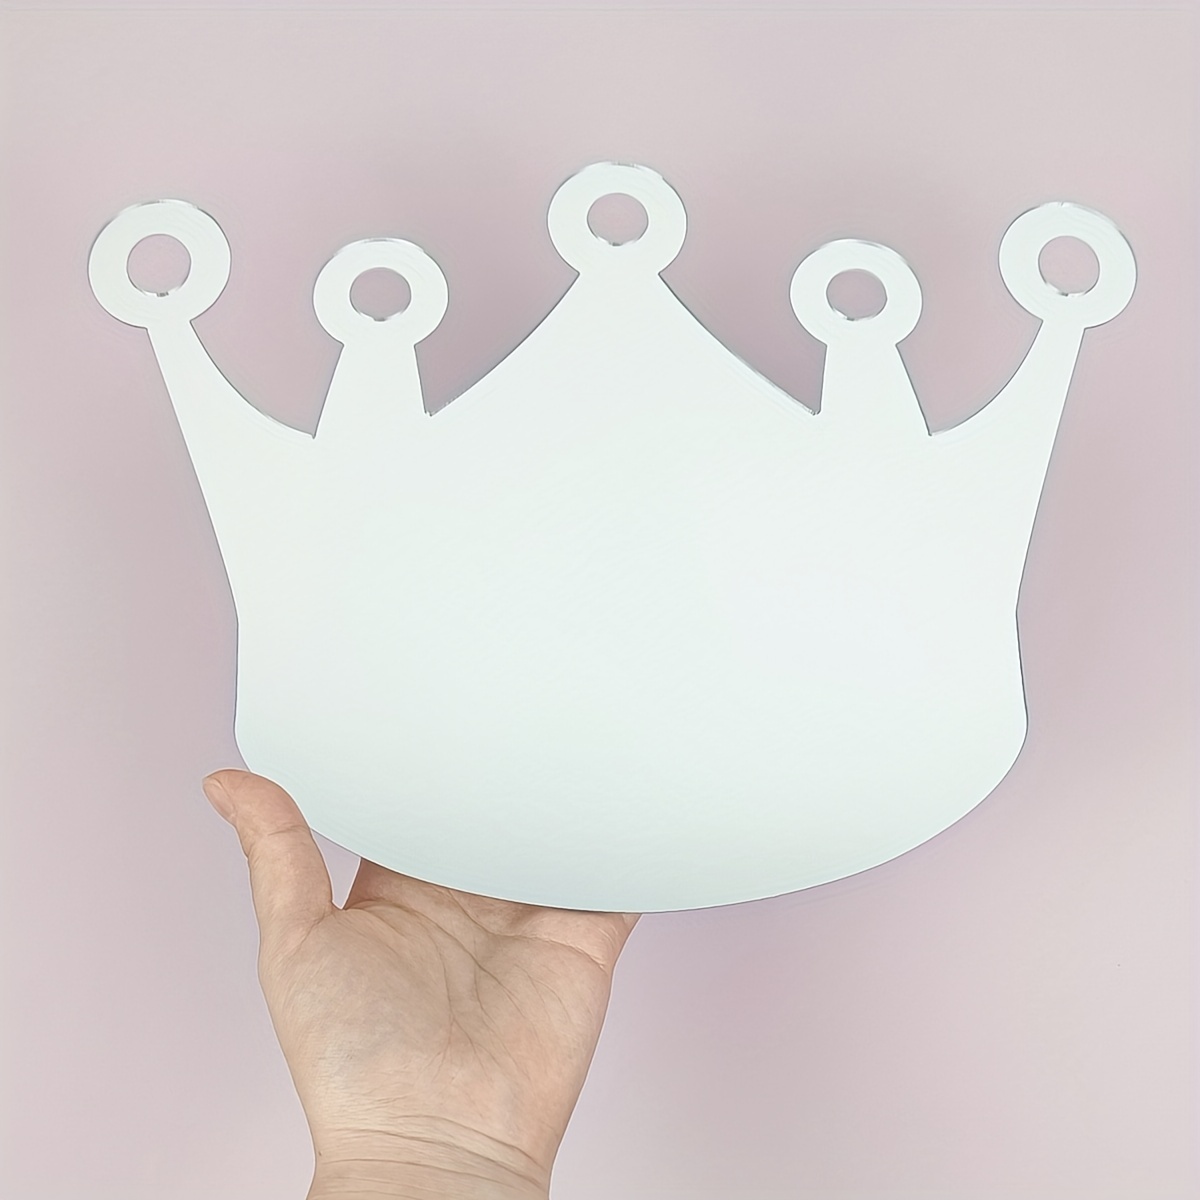 King's Crown Shaped Mirror Wall Sticker Plastic Mirror Wall - Temu